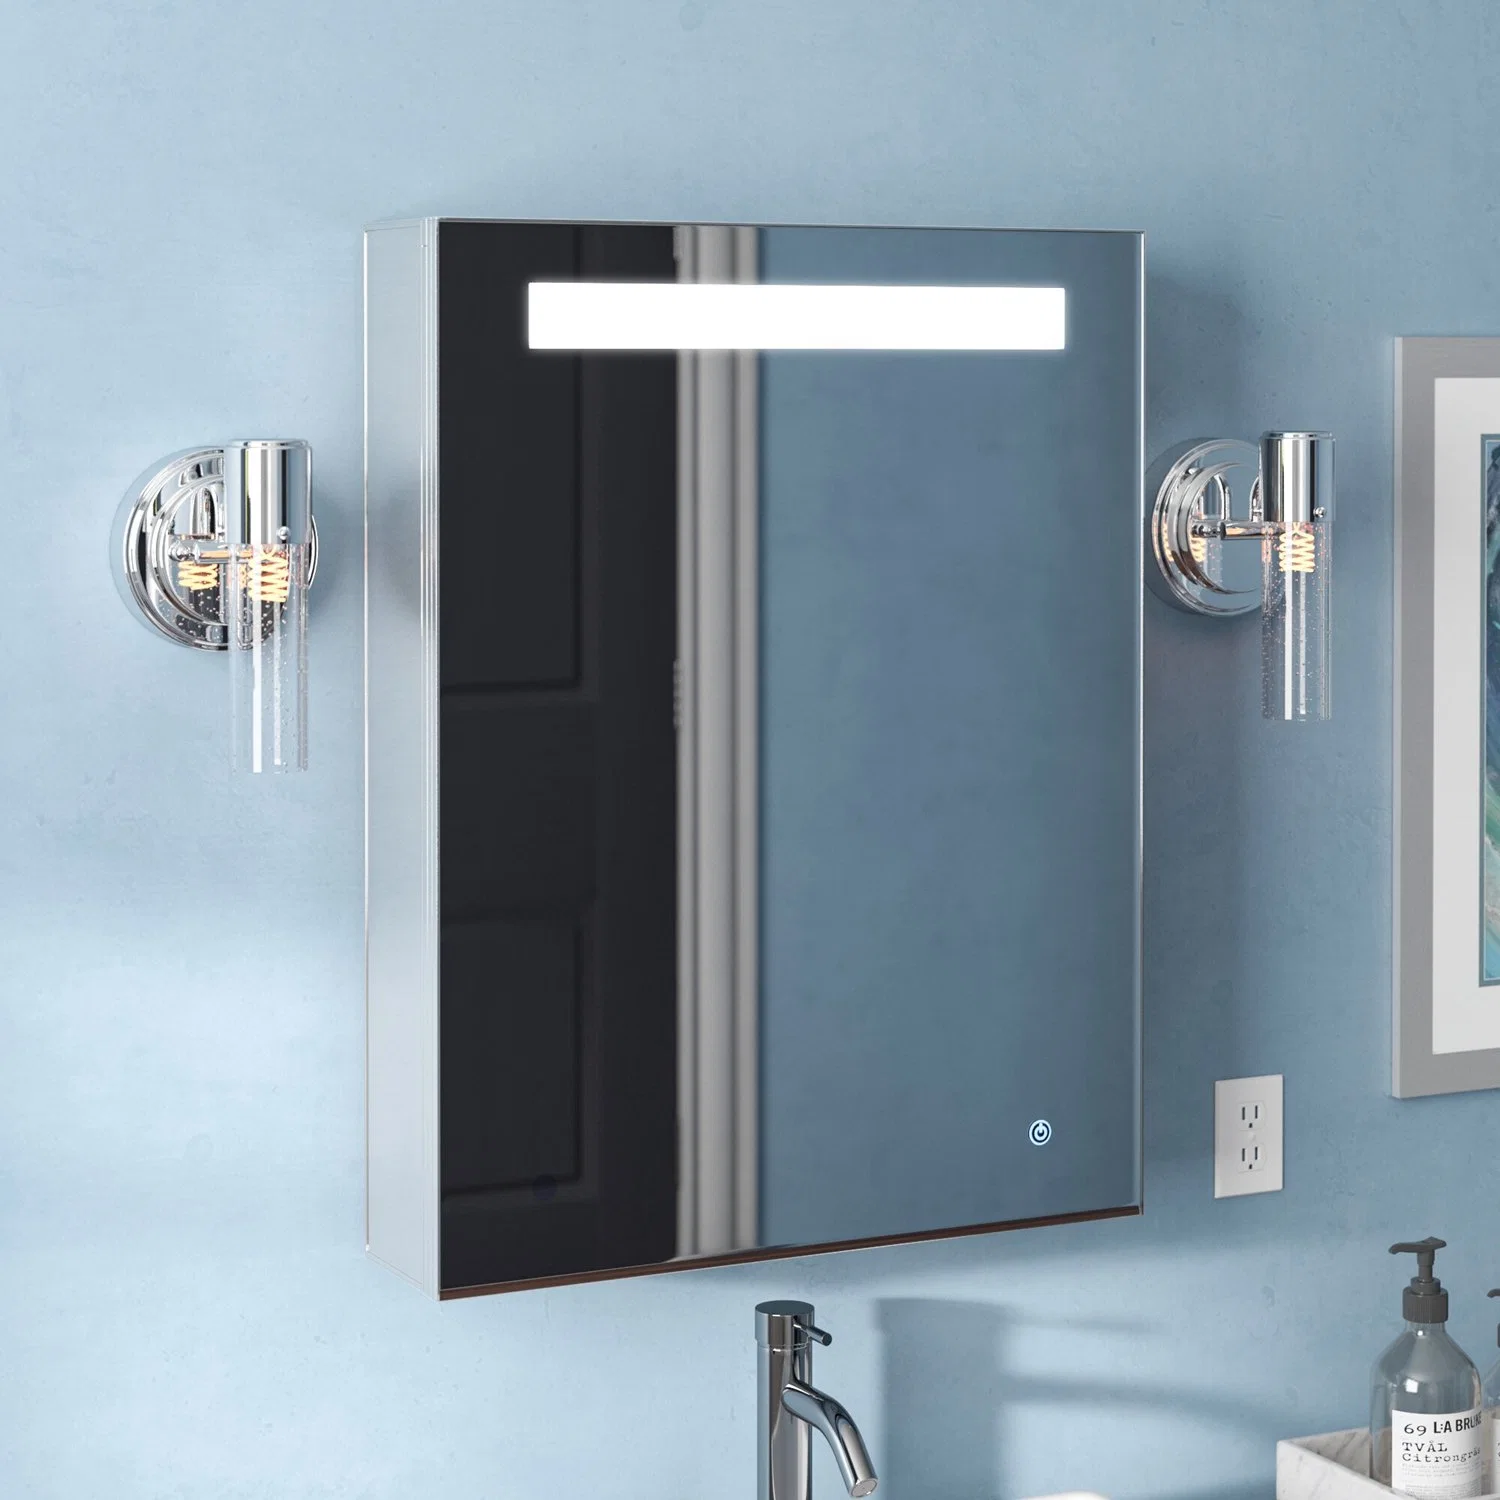 Jh verre Home Meubles MDF en PVC de la vanité du bassin de l'armoire miroir LED